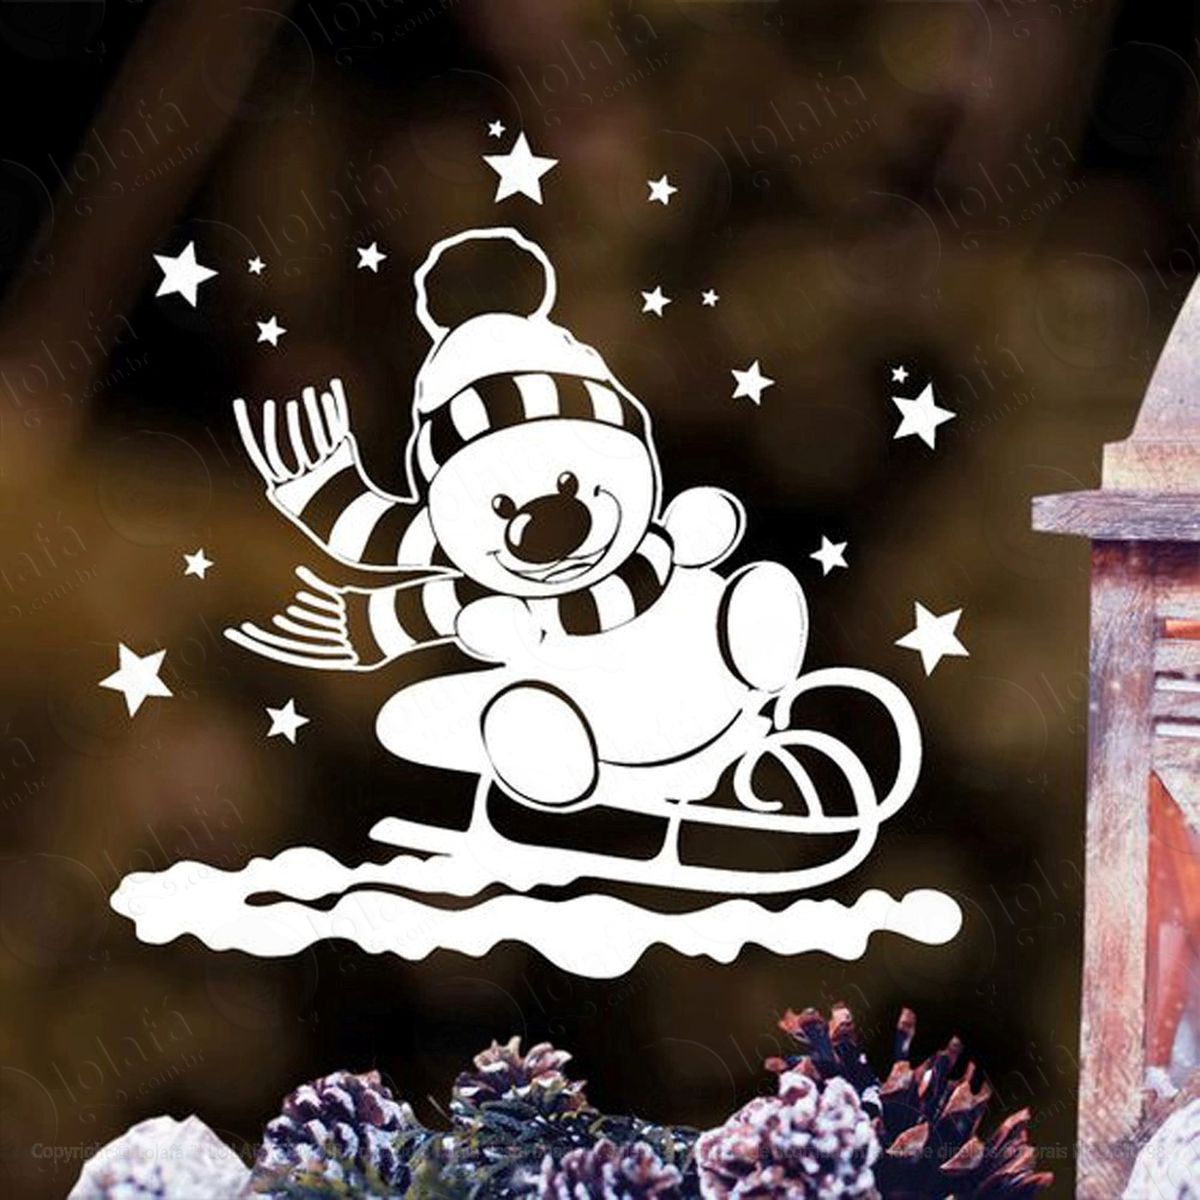 boneco de neve no trenó adesivo de natal para vitrine, parede, porta de vidro - decoração natalina mod:275